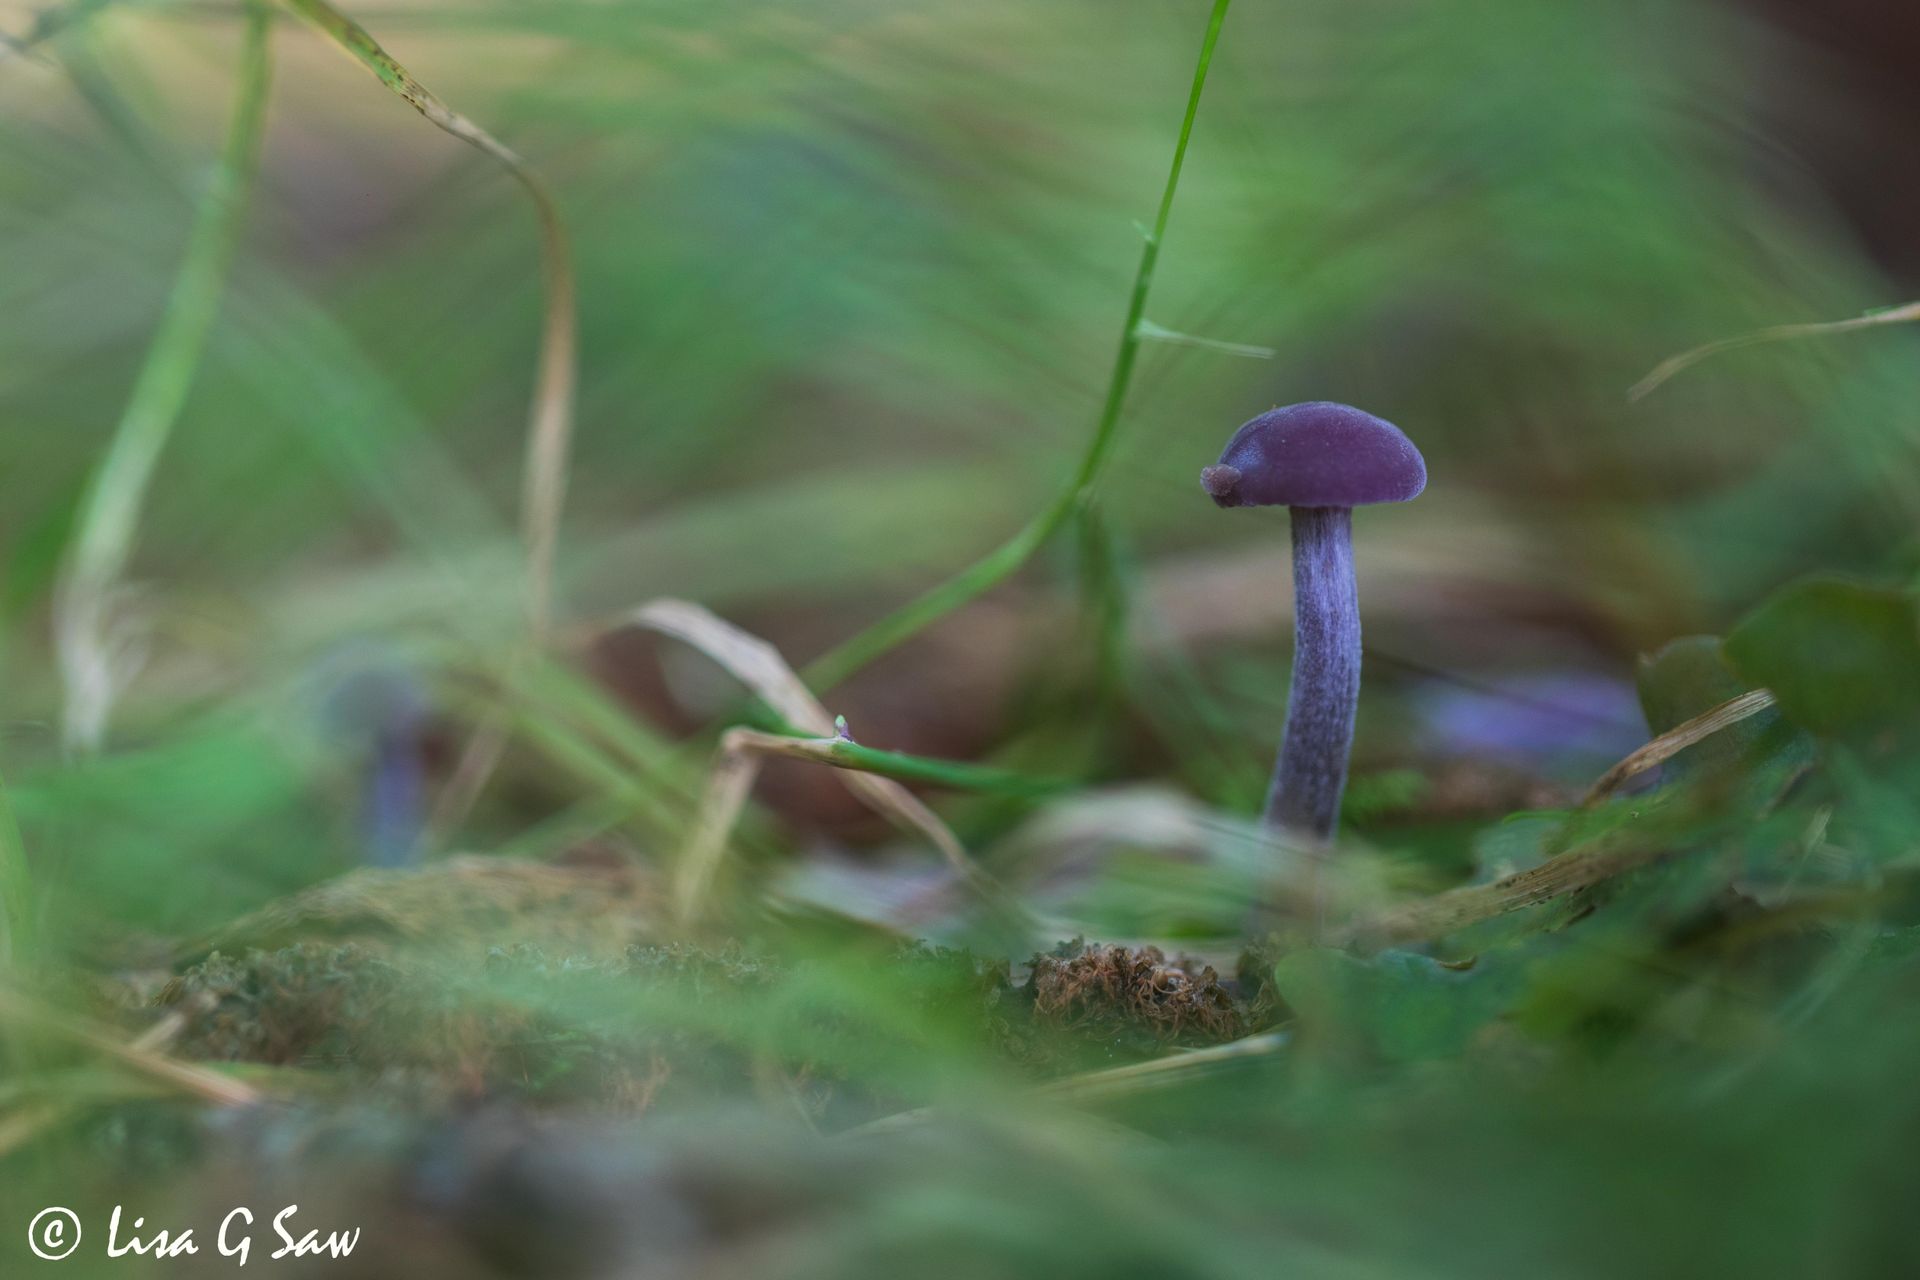 Amethyst Deceiver fungi amidst grass